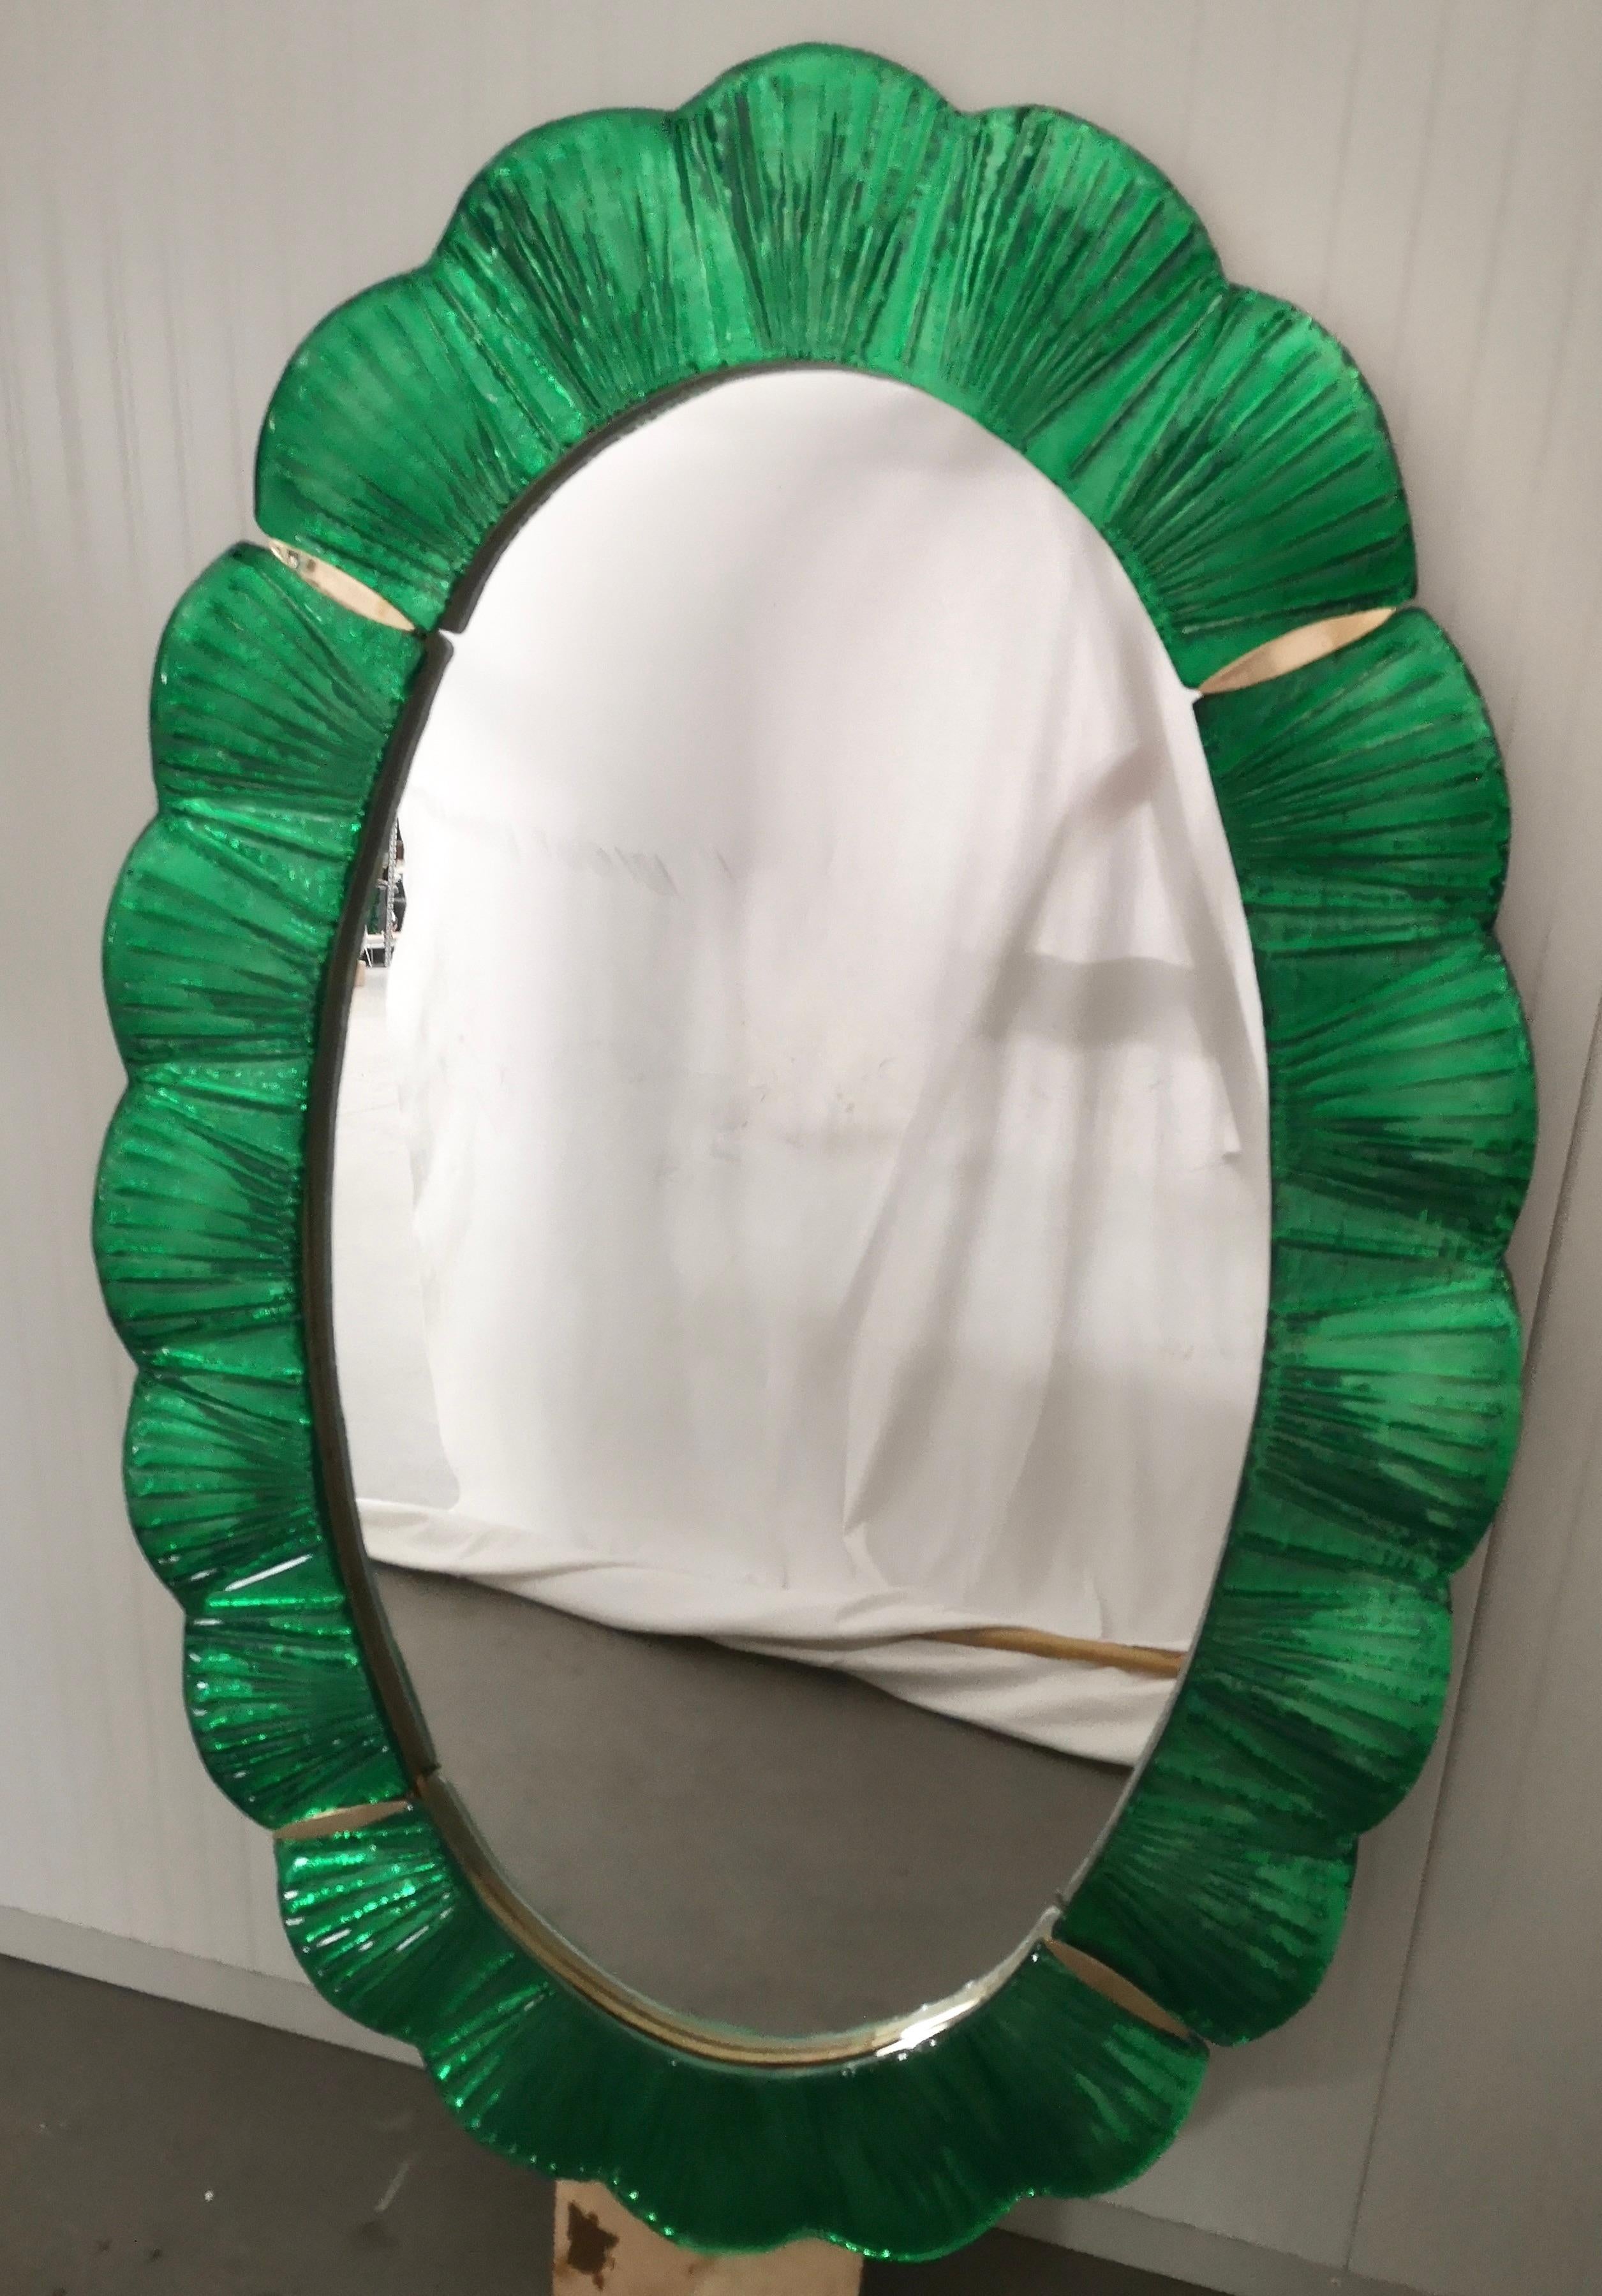 Atemberaubende Spiegel in leuchtend grüne Farbe Murano-Glas, Venedig. Ein Spiegel, der allein Ihr Zuhause einrichtet.

Der Spiegel hat eine Rückwand aus Holz, auf der vier Muranoglasscheiben montiert sind, die wie auf dem Foto ein Oval bilden. Der